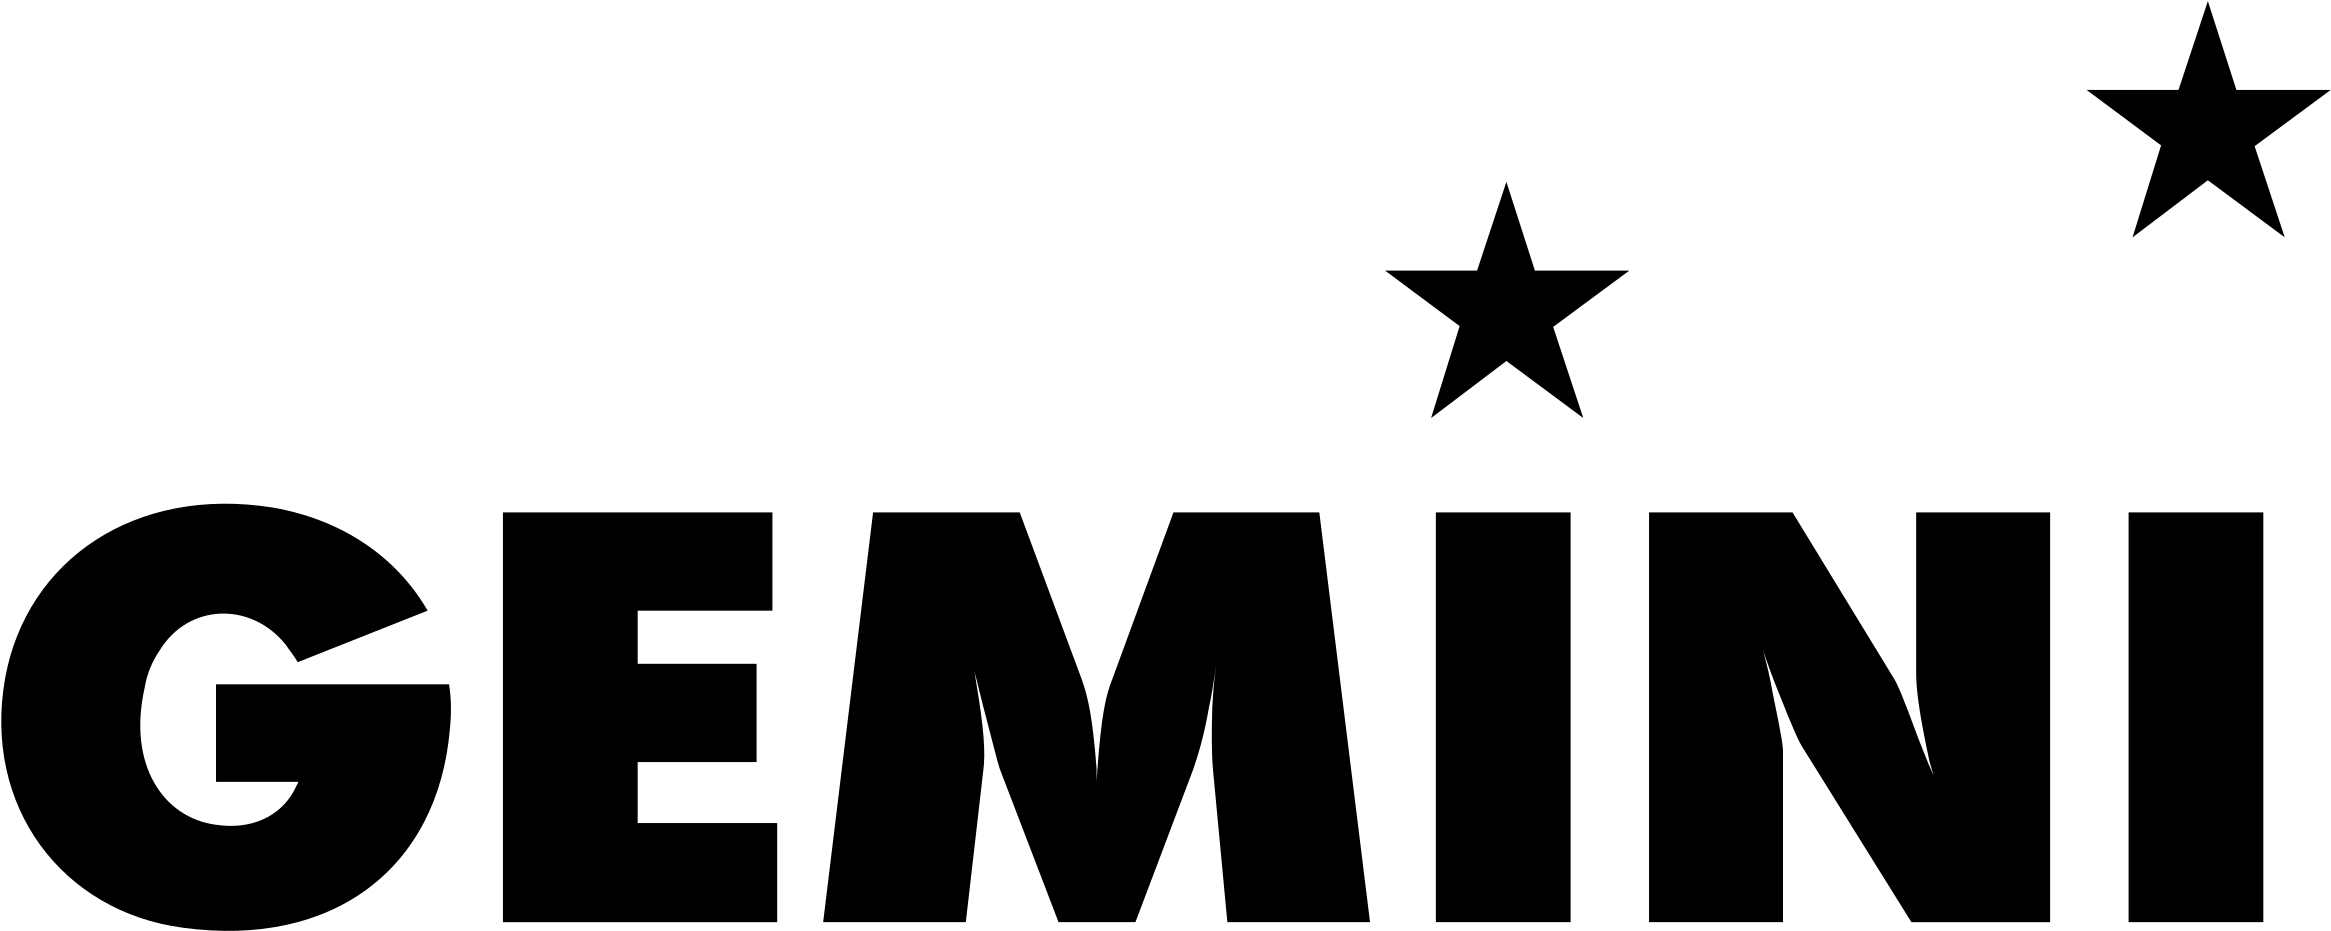 Gemini Logo Png Transparent - Gemini (2400x2400), Png Download